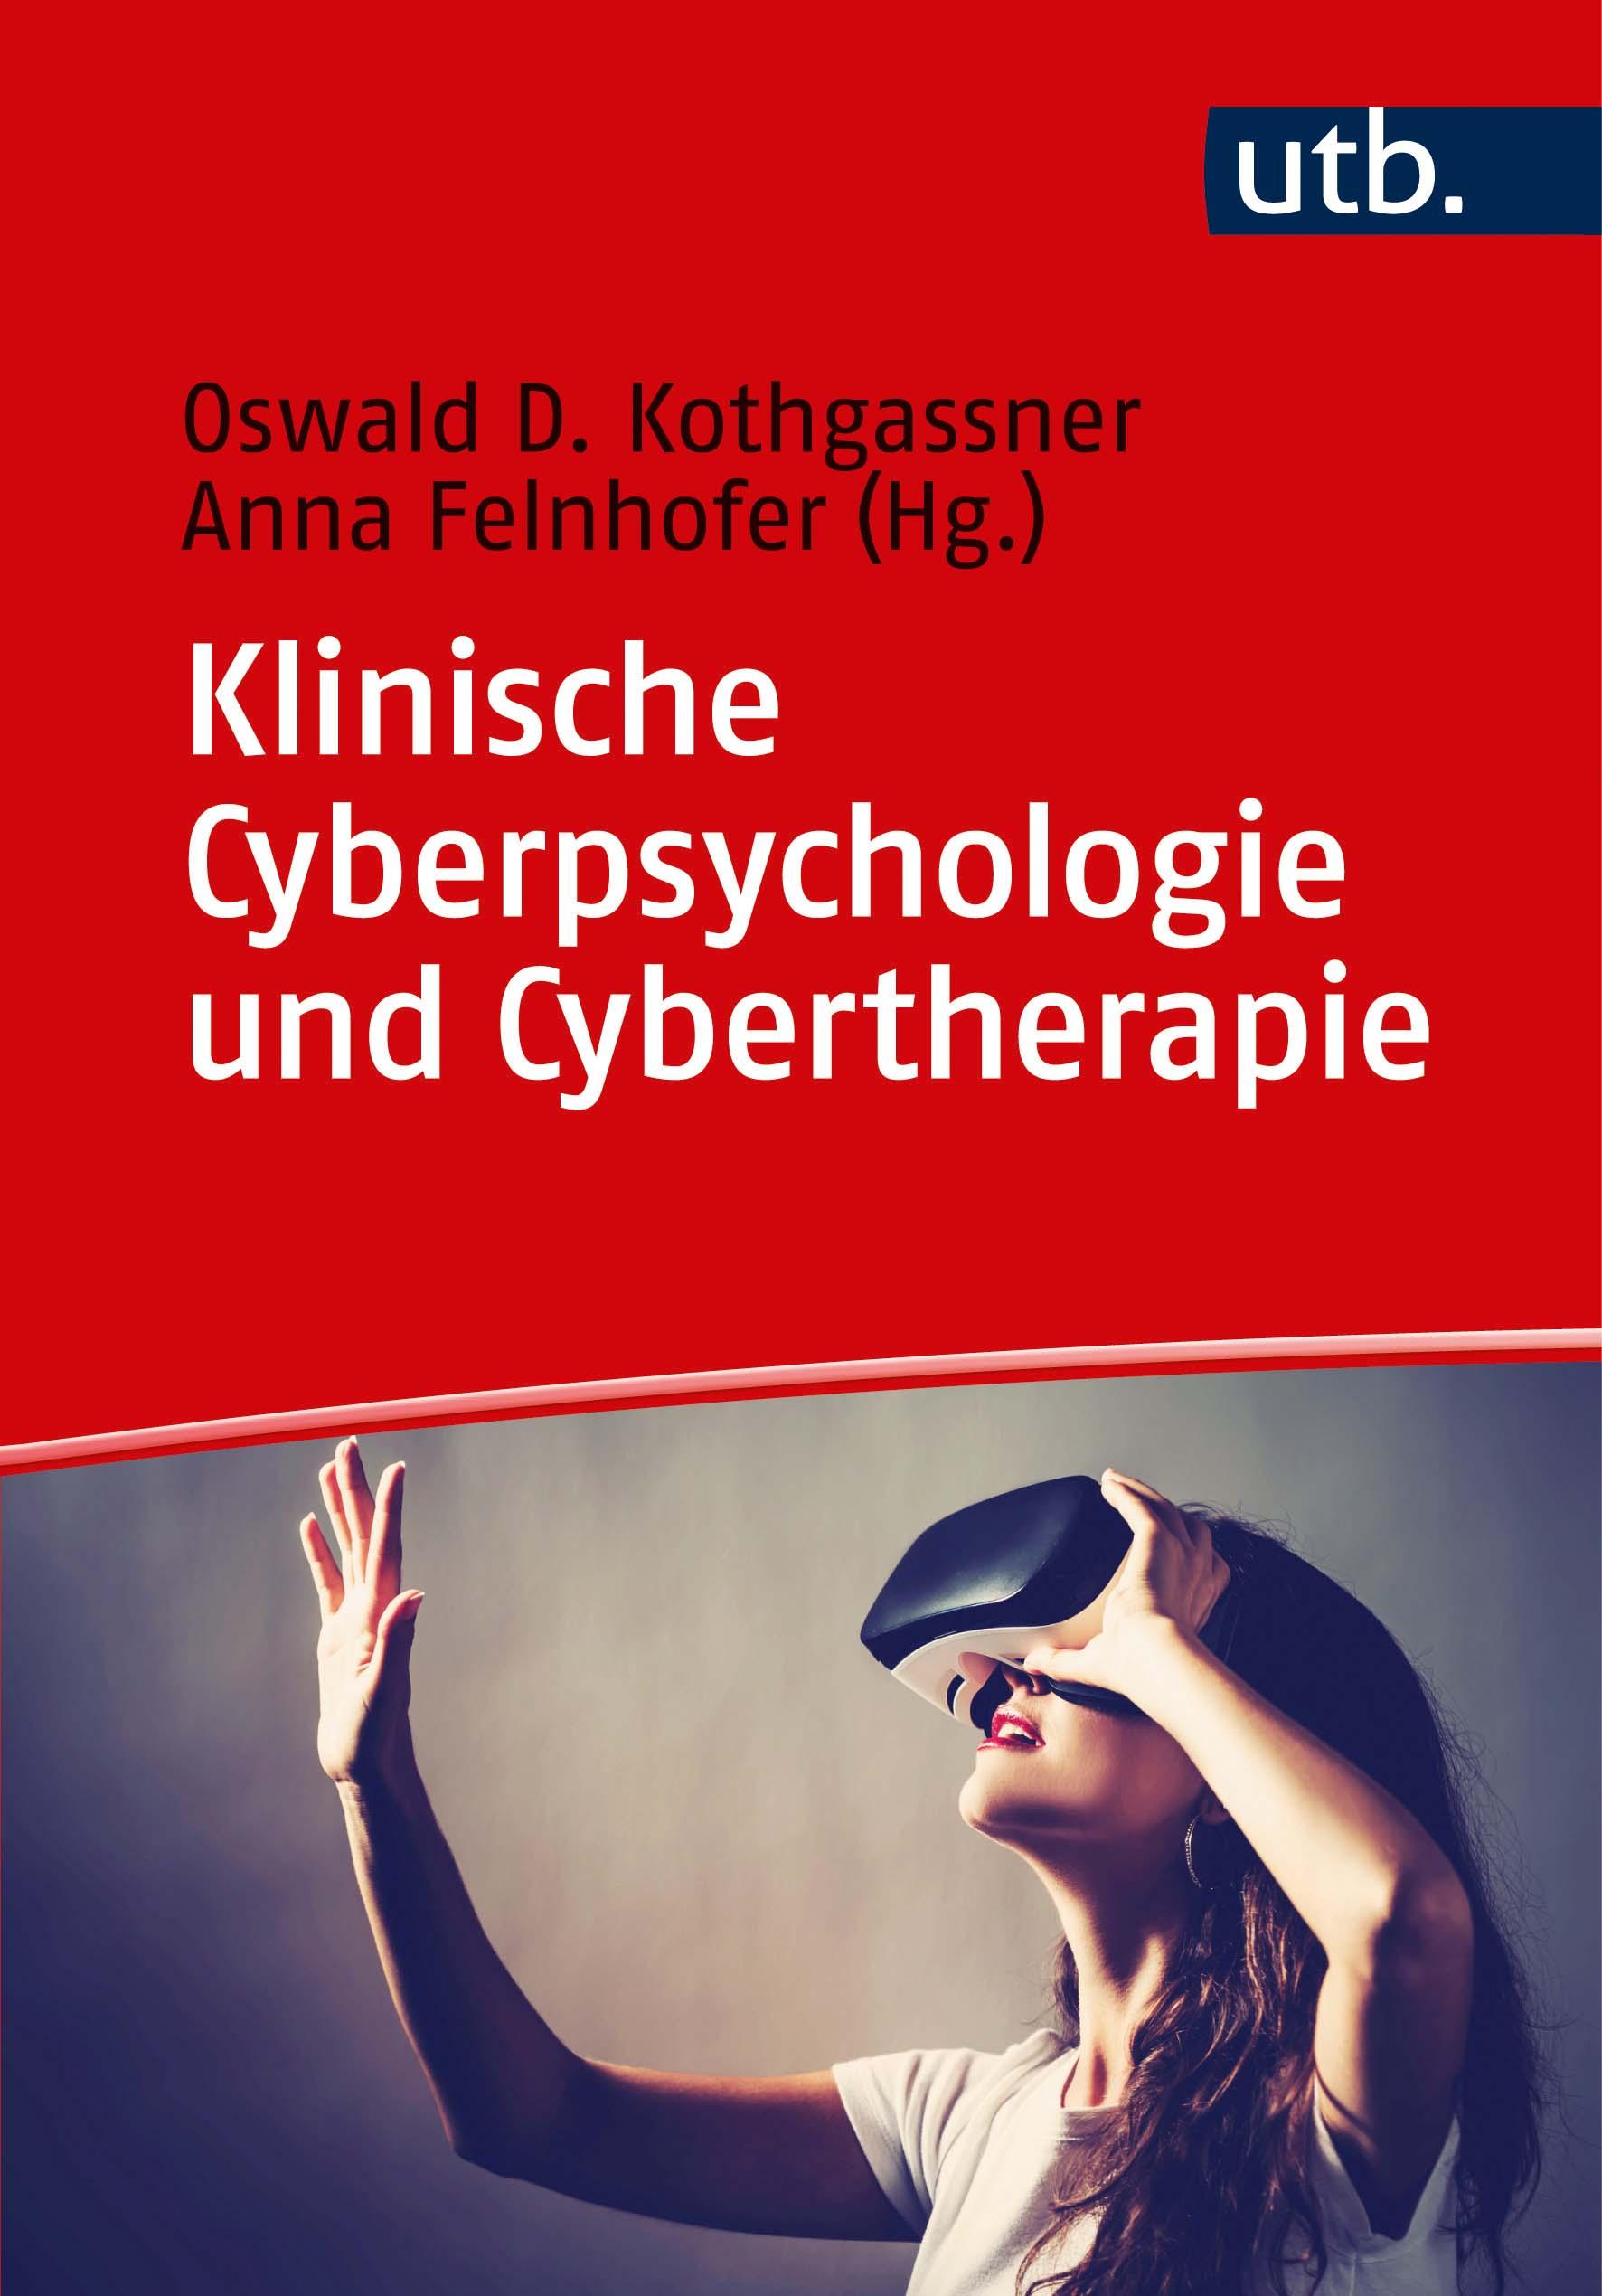 Klinische Cyberpsychologie und Cybertherapie - Kothgassner, Oswald D.|Felnhofer, Anna